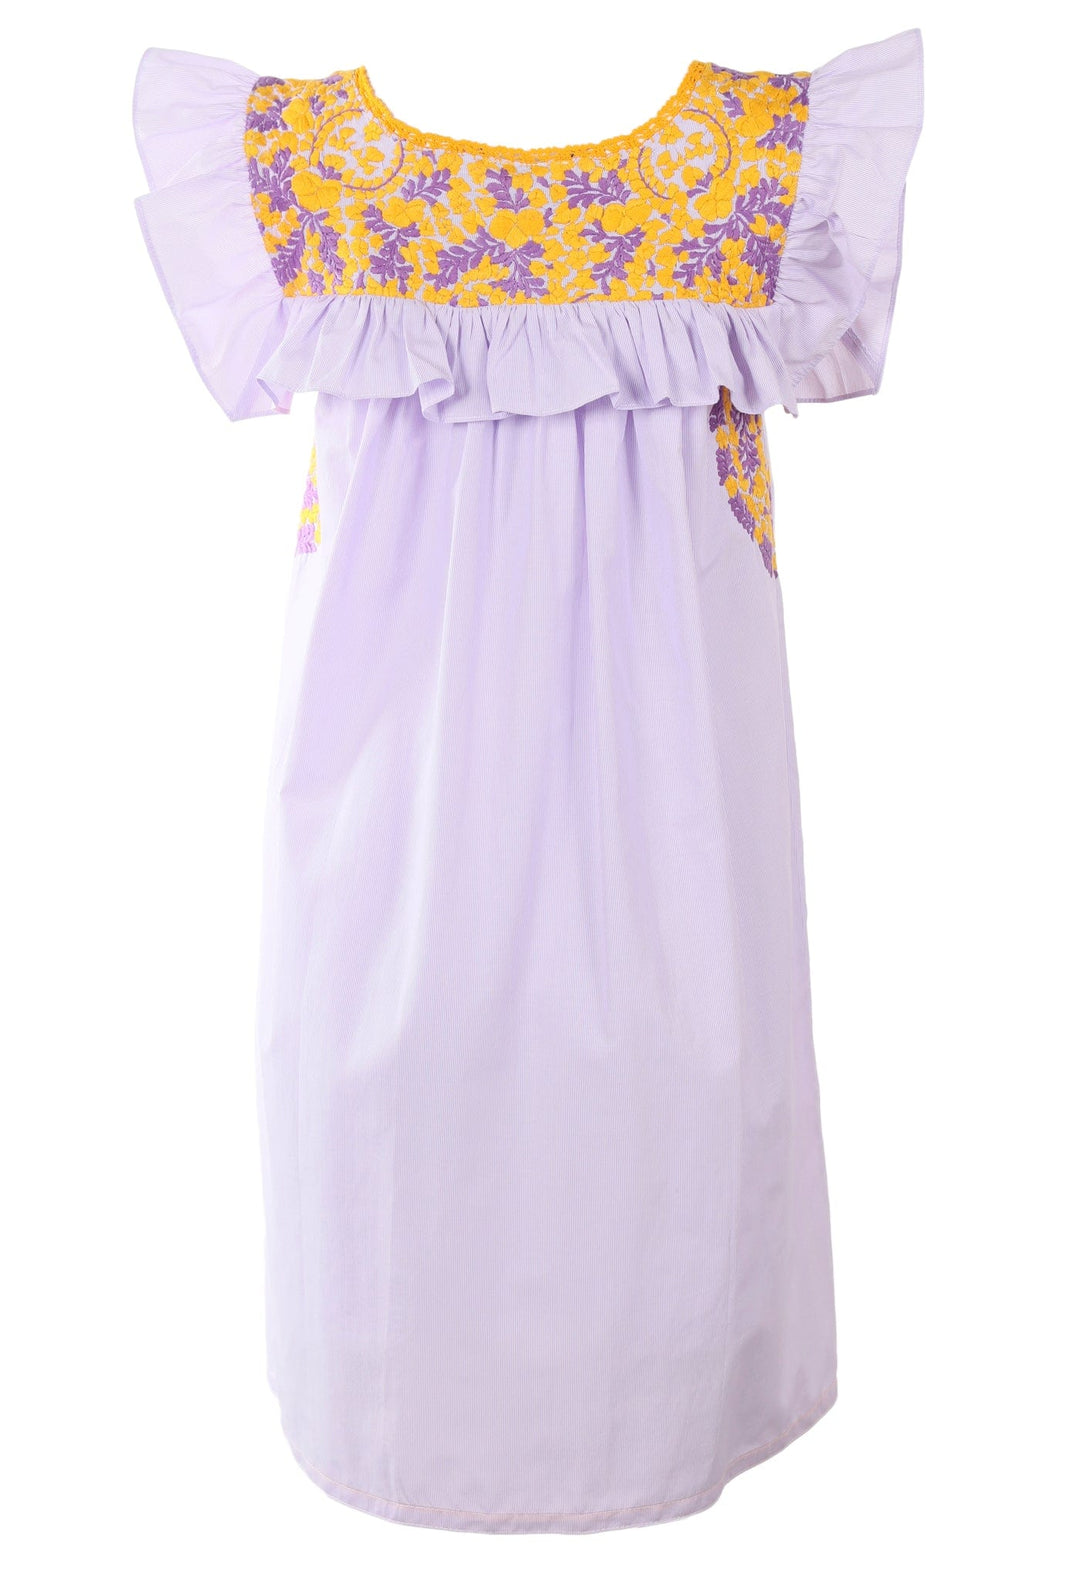 Soledad Short Dress Dress Soledad Prendo Amarillo y Purpura